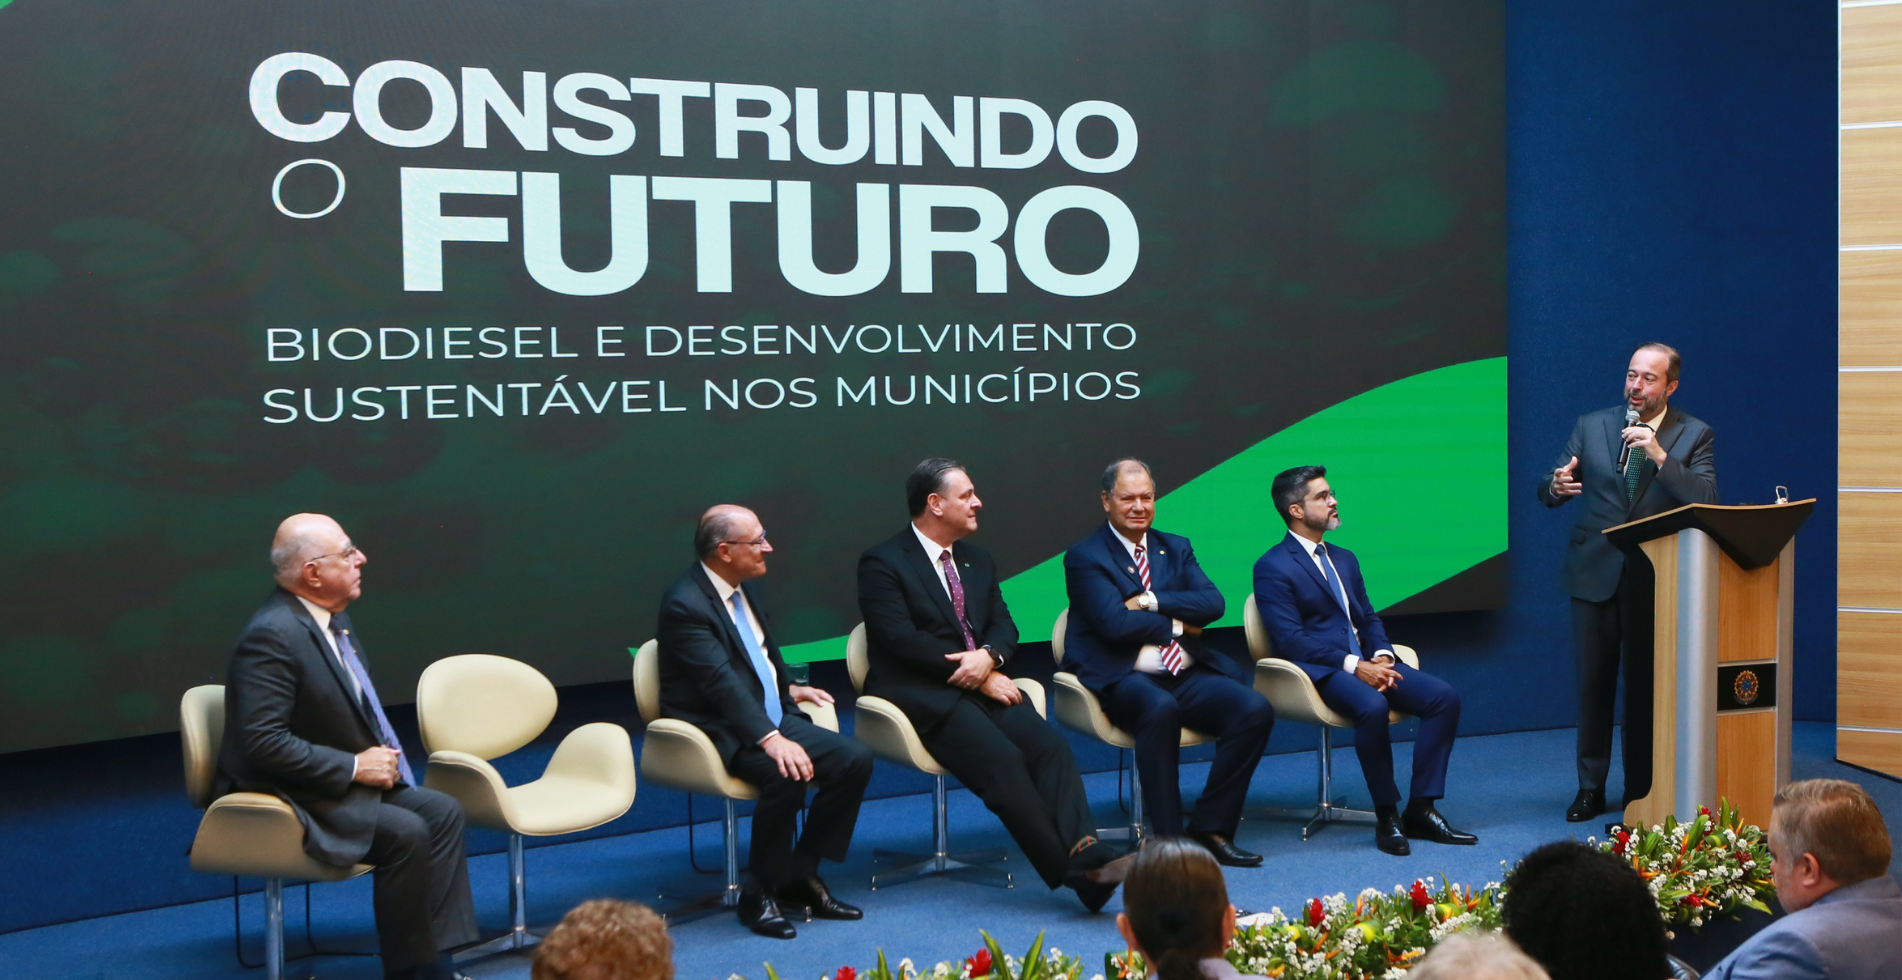 Até 2037, expectativa é de que setores de bioenergia no Brasil recebam R$ 200 bilhões em investimentos